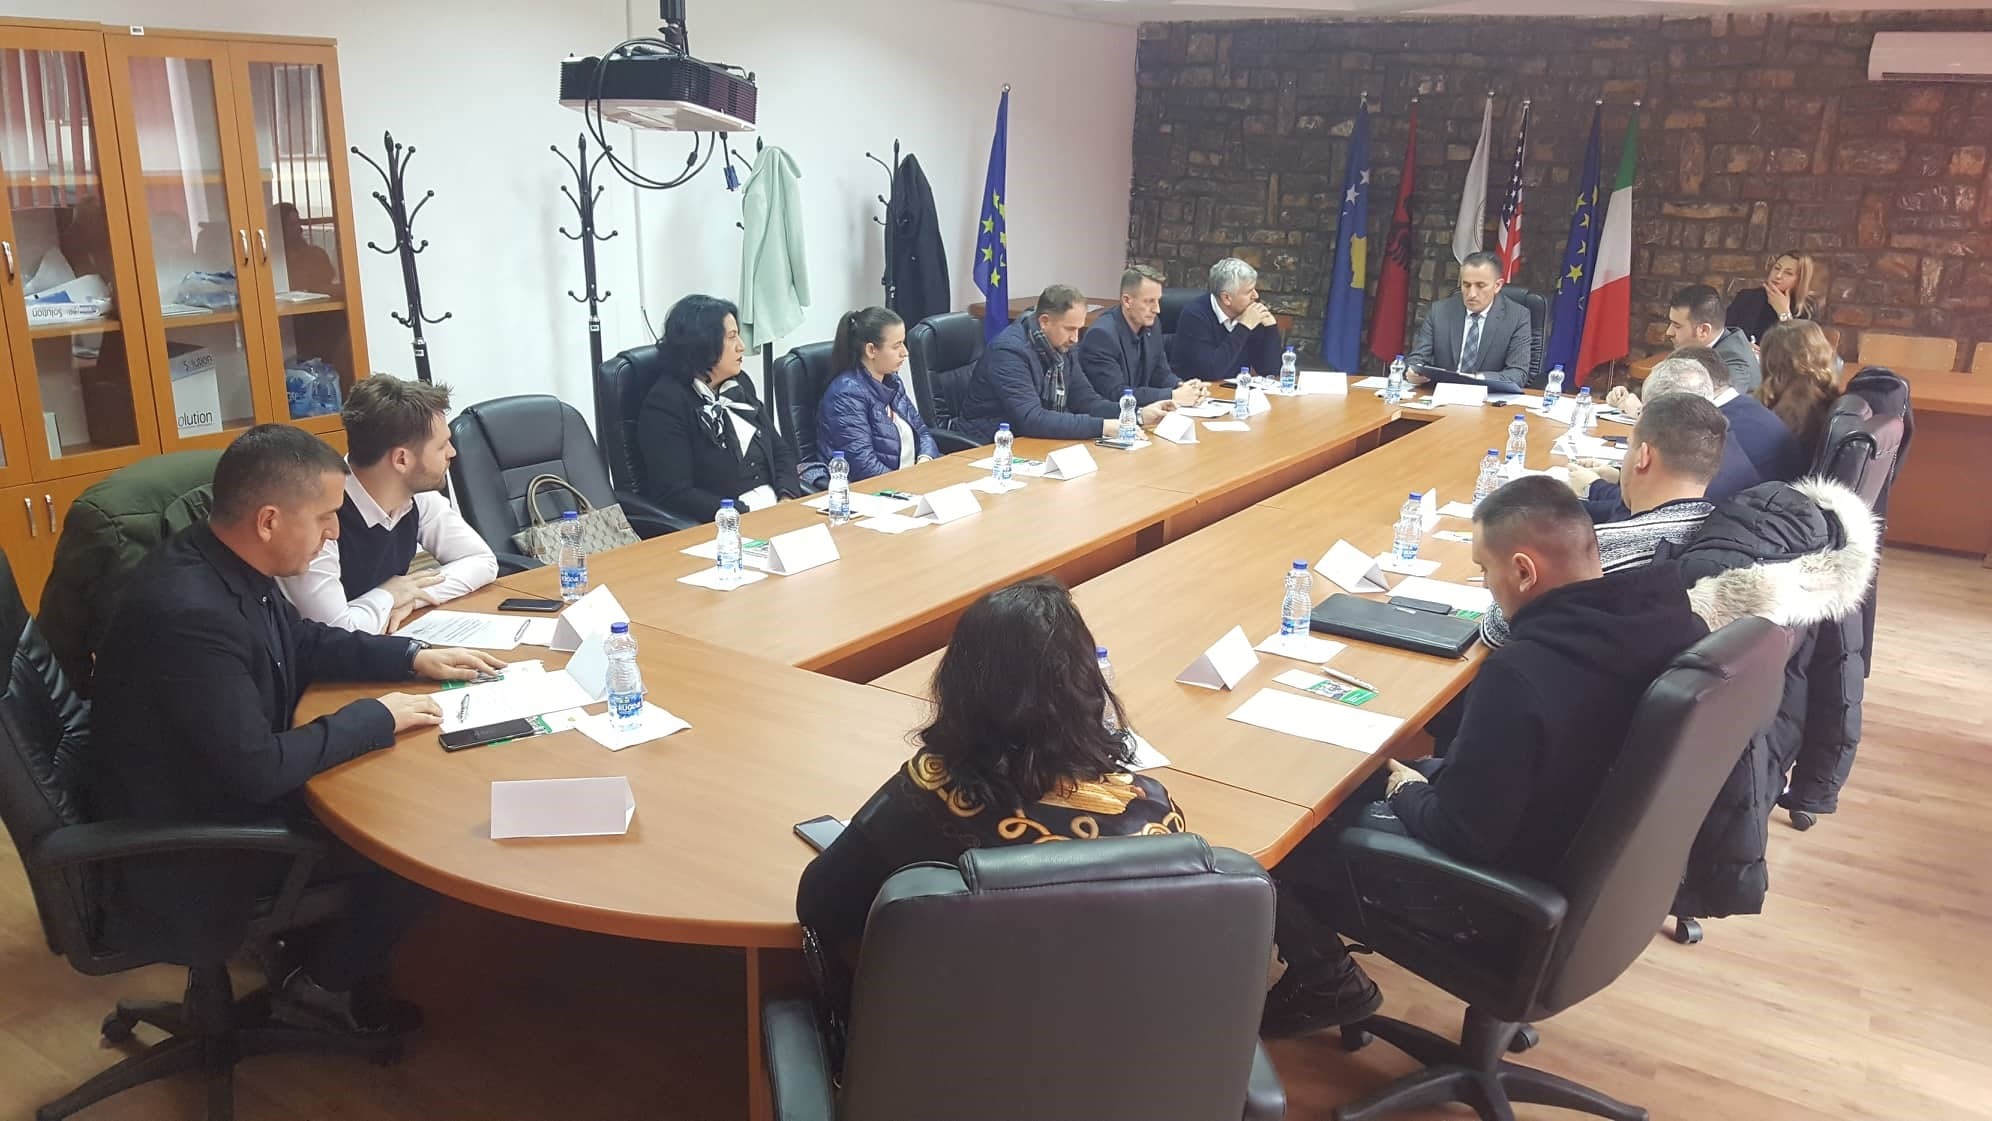 Konstituohet Bordi Këshillëdhënës Industrial në Universitetin e Prizrenit 